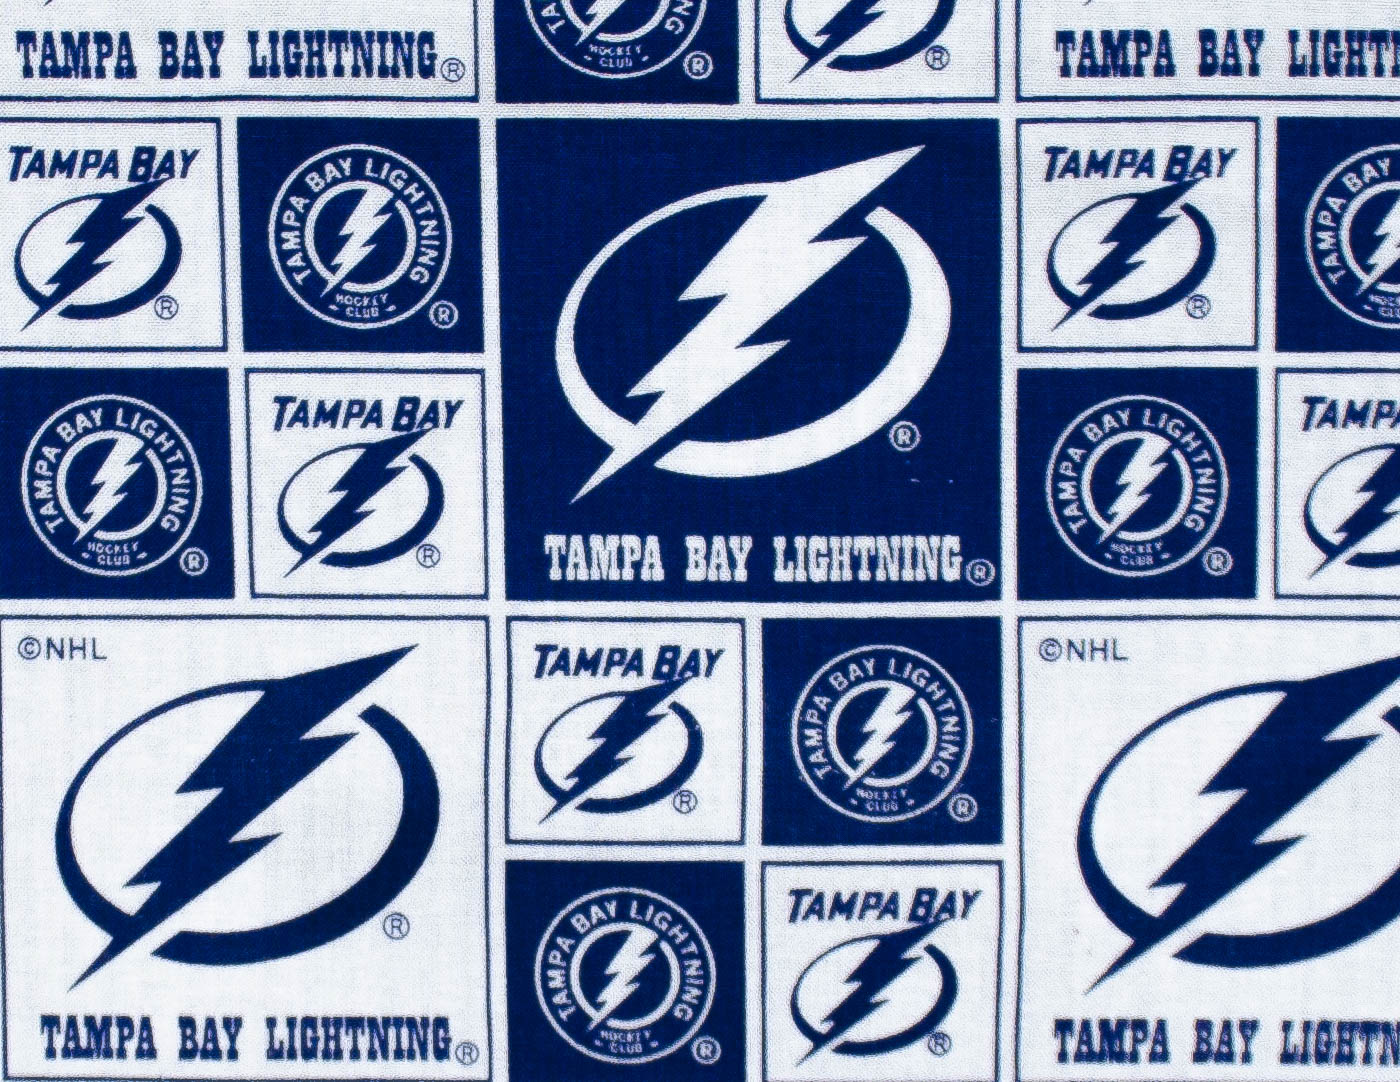 Tampa lightning (299)